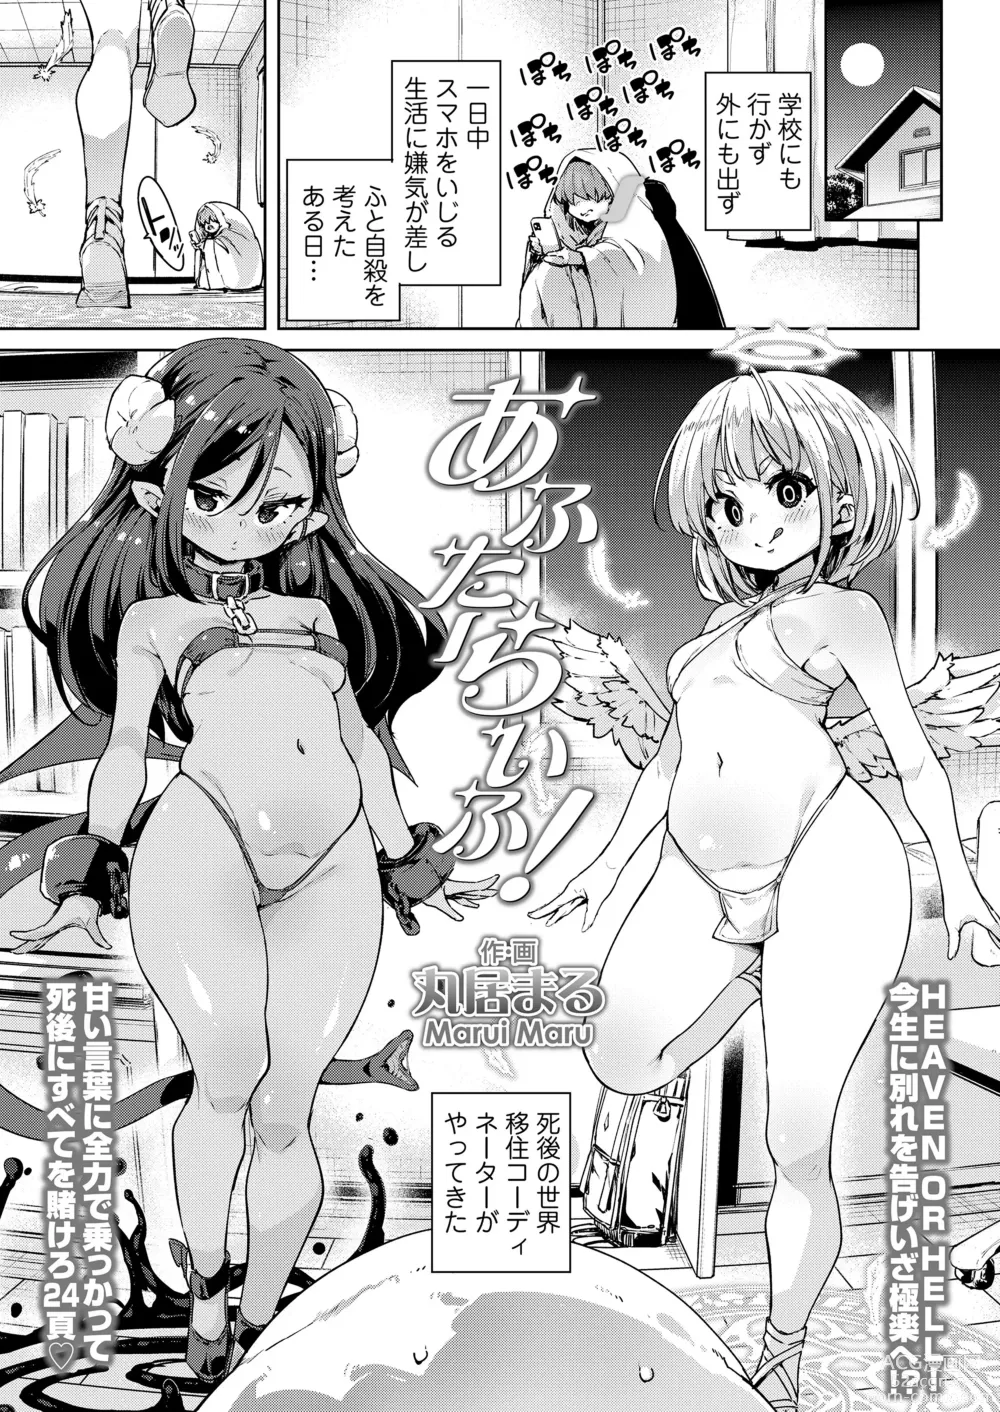 Page 3 of manga Towako Oboro Emaki 14